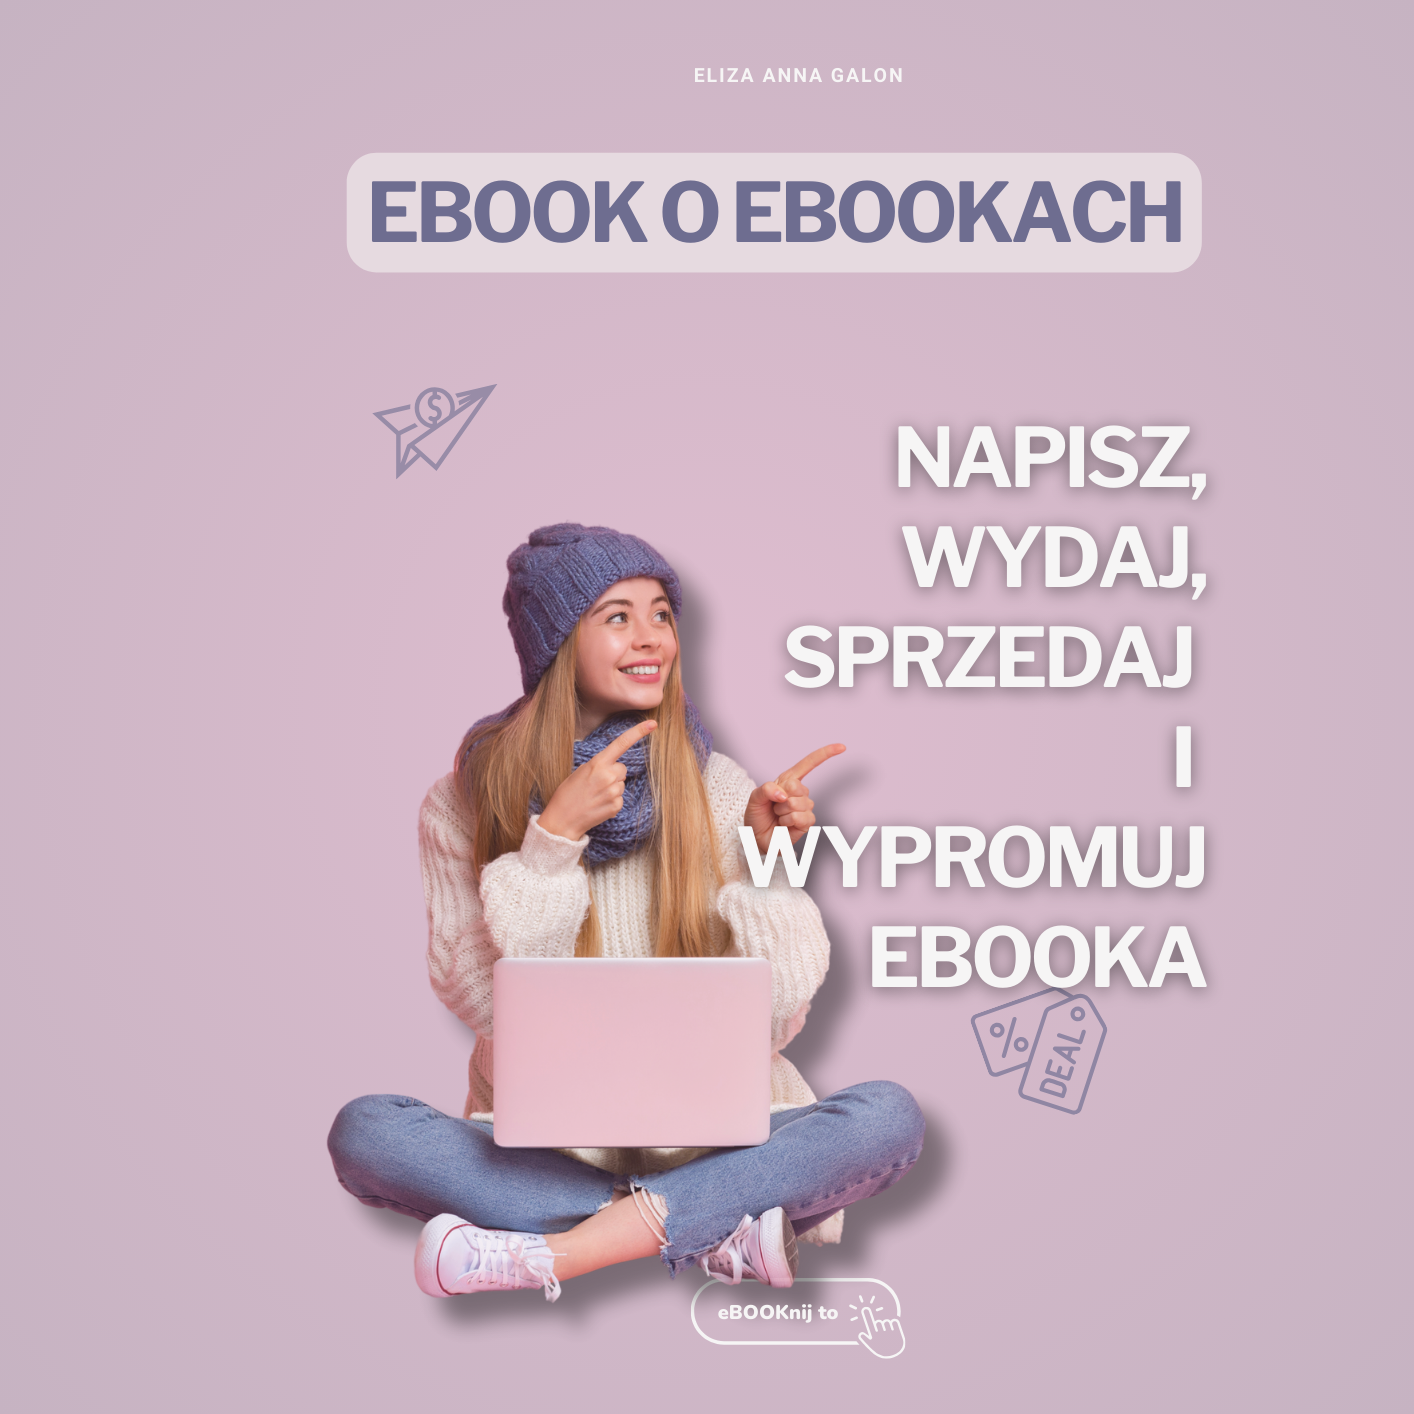 eBook o eBookach - jak napisać, wydać, sprzedać i wypromować eBOOKa?